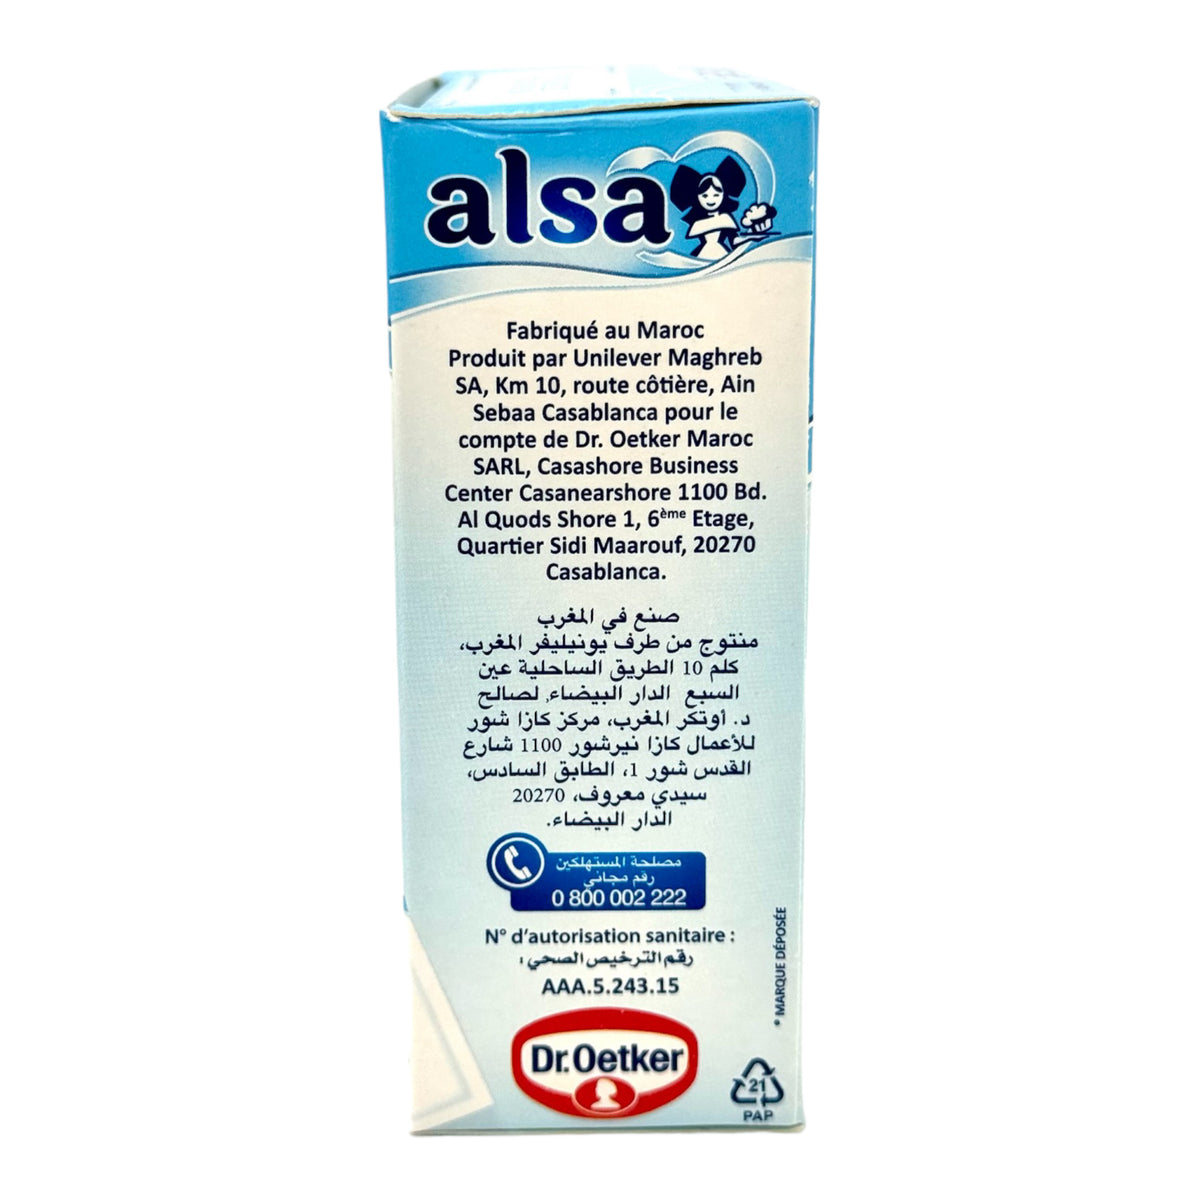 Alsa - Sucre arôme vanille / Alsa - Vanilla flavored sugar – Le Pro 1600